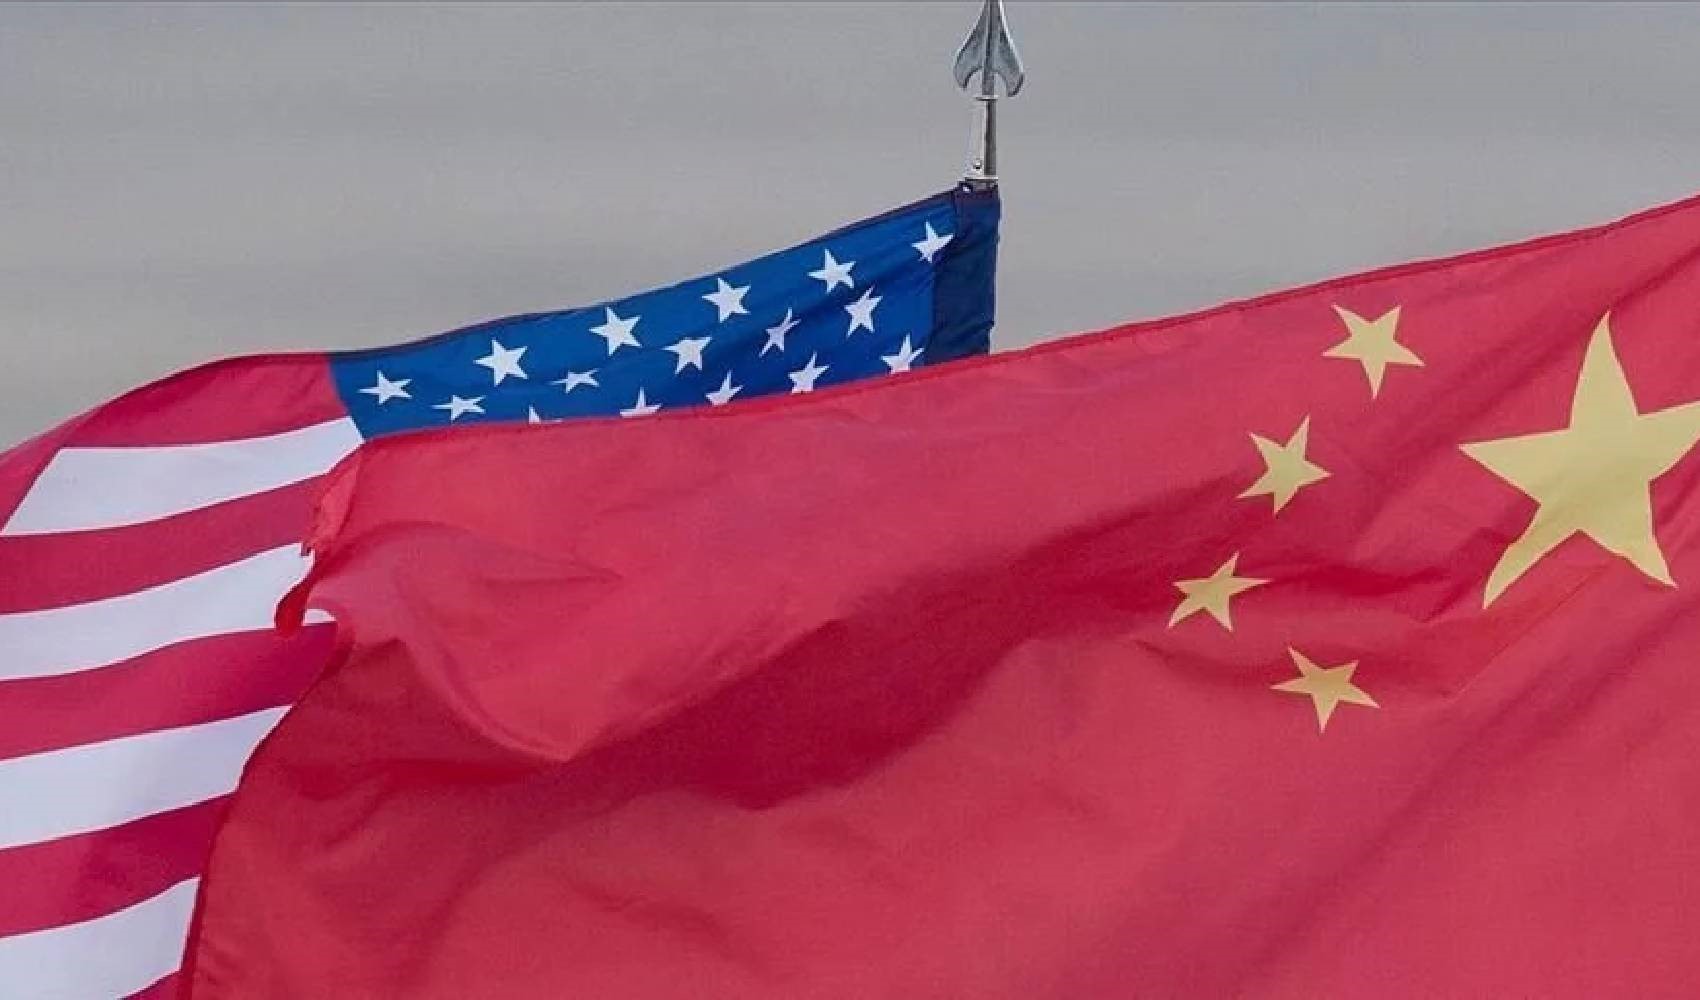 Çin, ABD'li generalin Arjantin'deki uzay istasyonu hakkındaki iddialarına tepki gösterdi